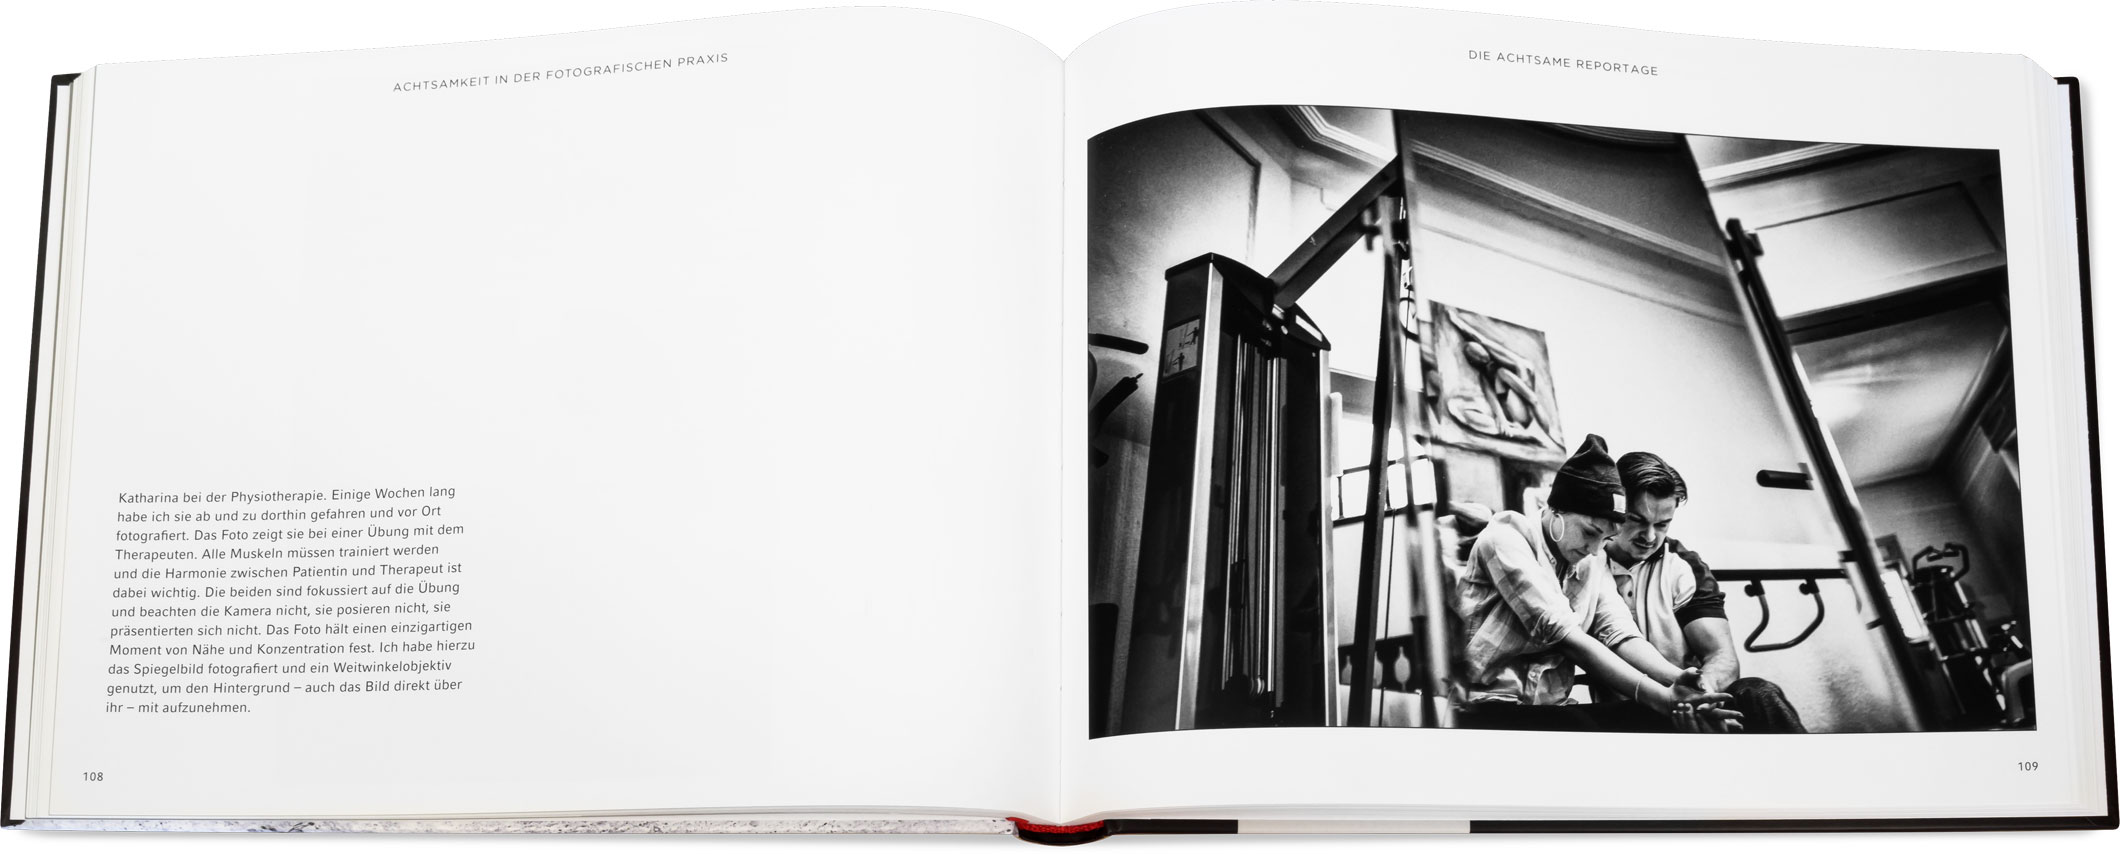 Blick ins Buch: Achtsam fotografieren